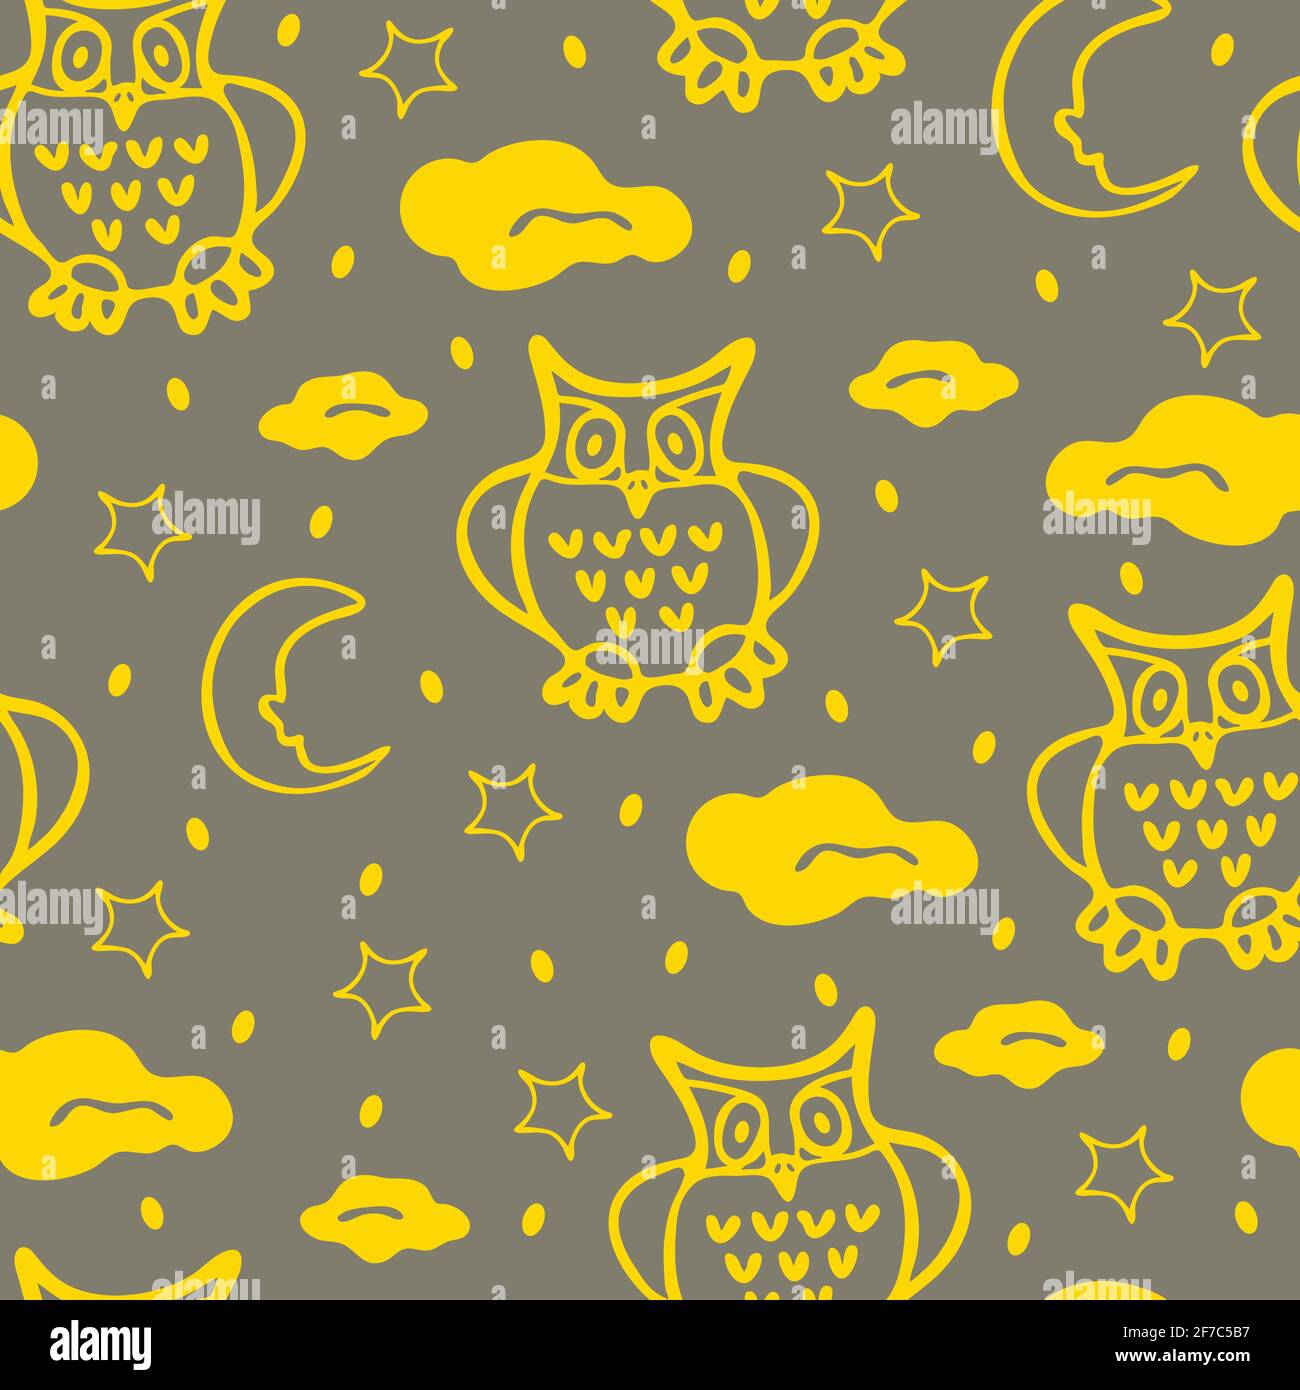 Nahtloses Vektormuster mit gelben Eulen auf grauem Hintergrund. Nachtvögel Tapetendesign mit Mond und Sternen. Traumhaft schöne Mode-Textilien. Stock Vektor